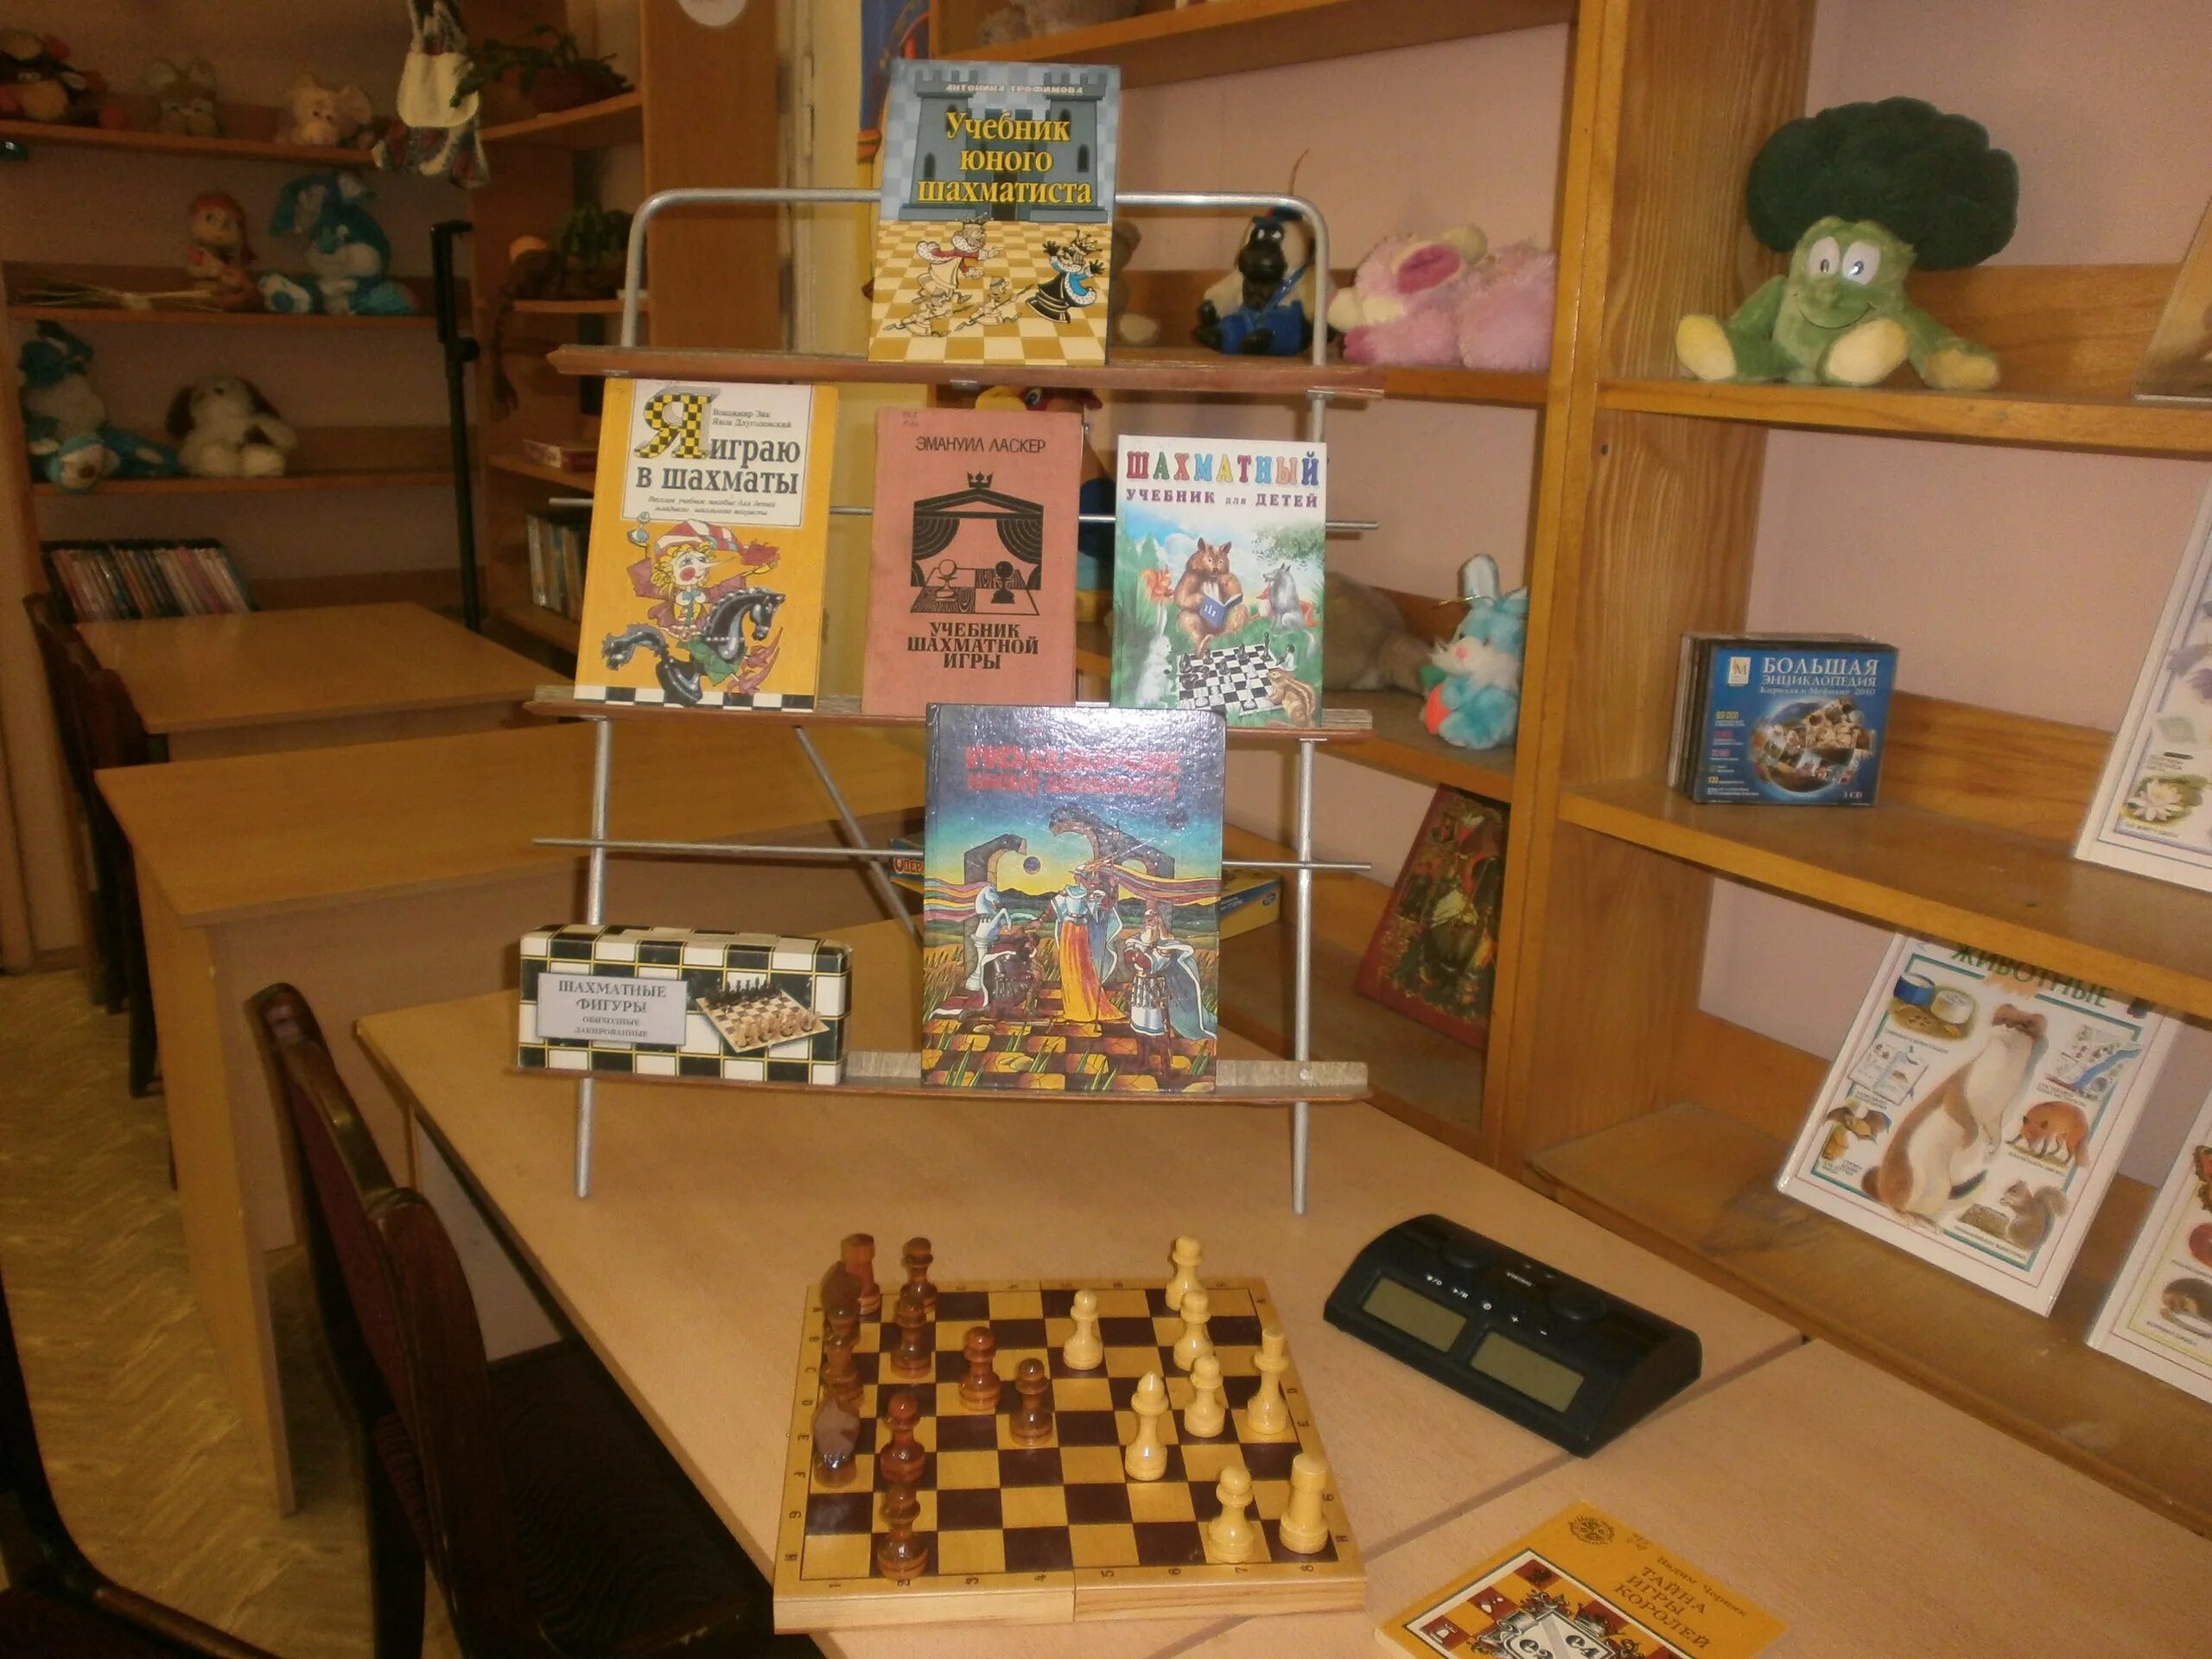 Выставка к Дню шахмат в библиотеке. Шахматная выставка в библиотеке. Выставка по шахматам в библиотеке. Книжная выставка о шахматах в библиотеке.